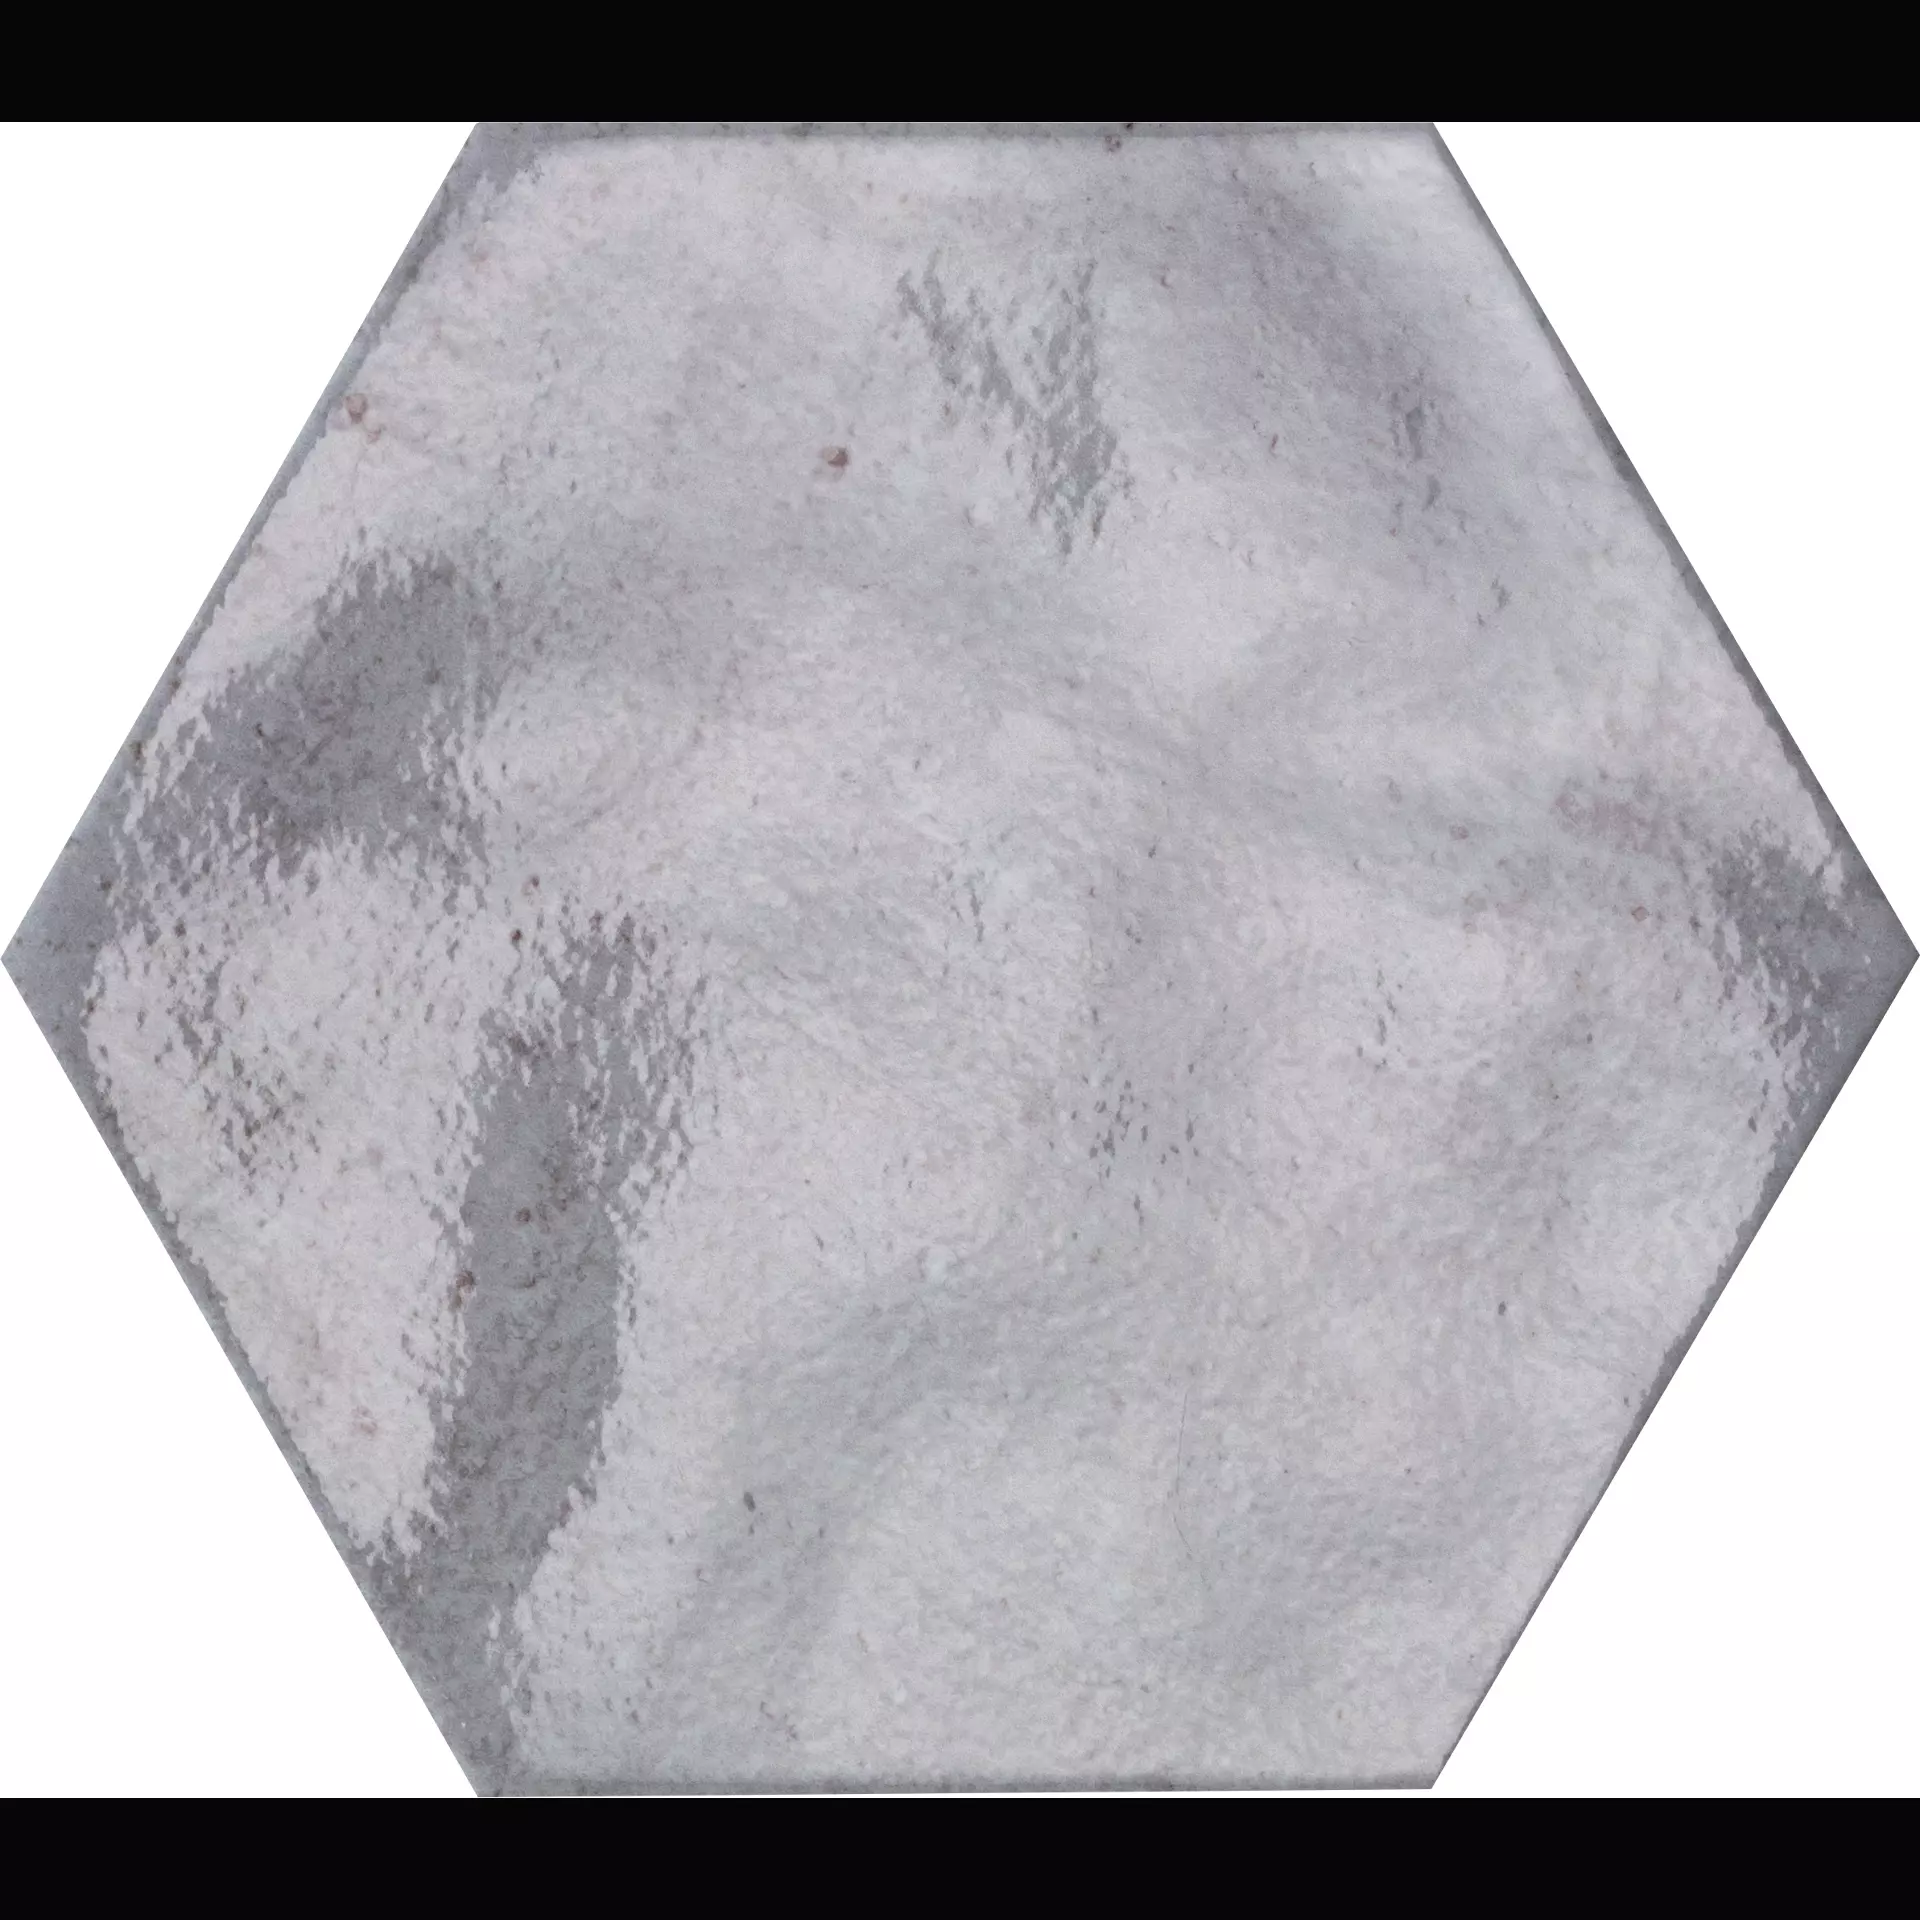 CIR Fuoritono Bianco Naturale Hexagon 1072702 24x27,7cm 10mm